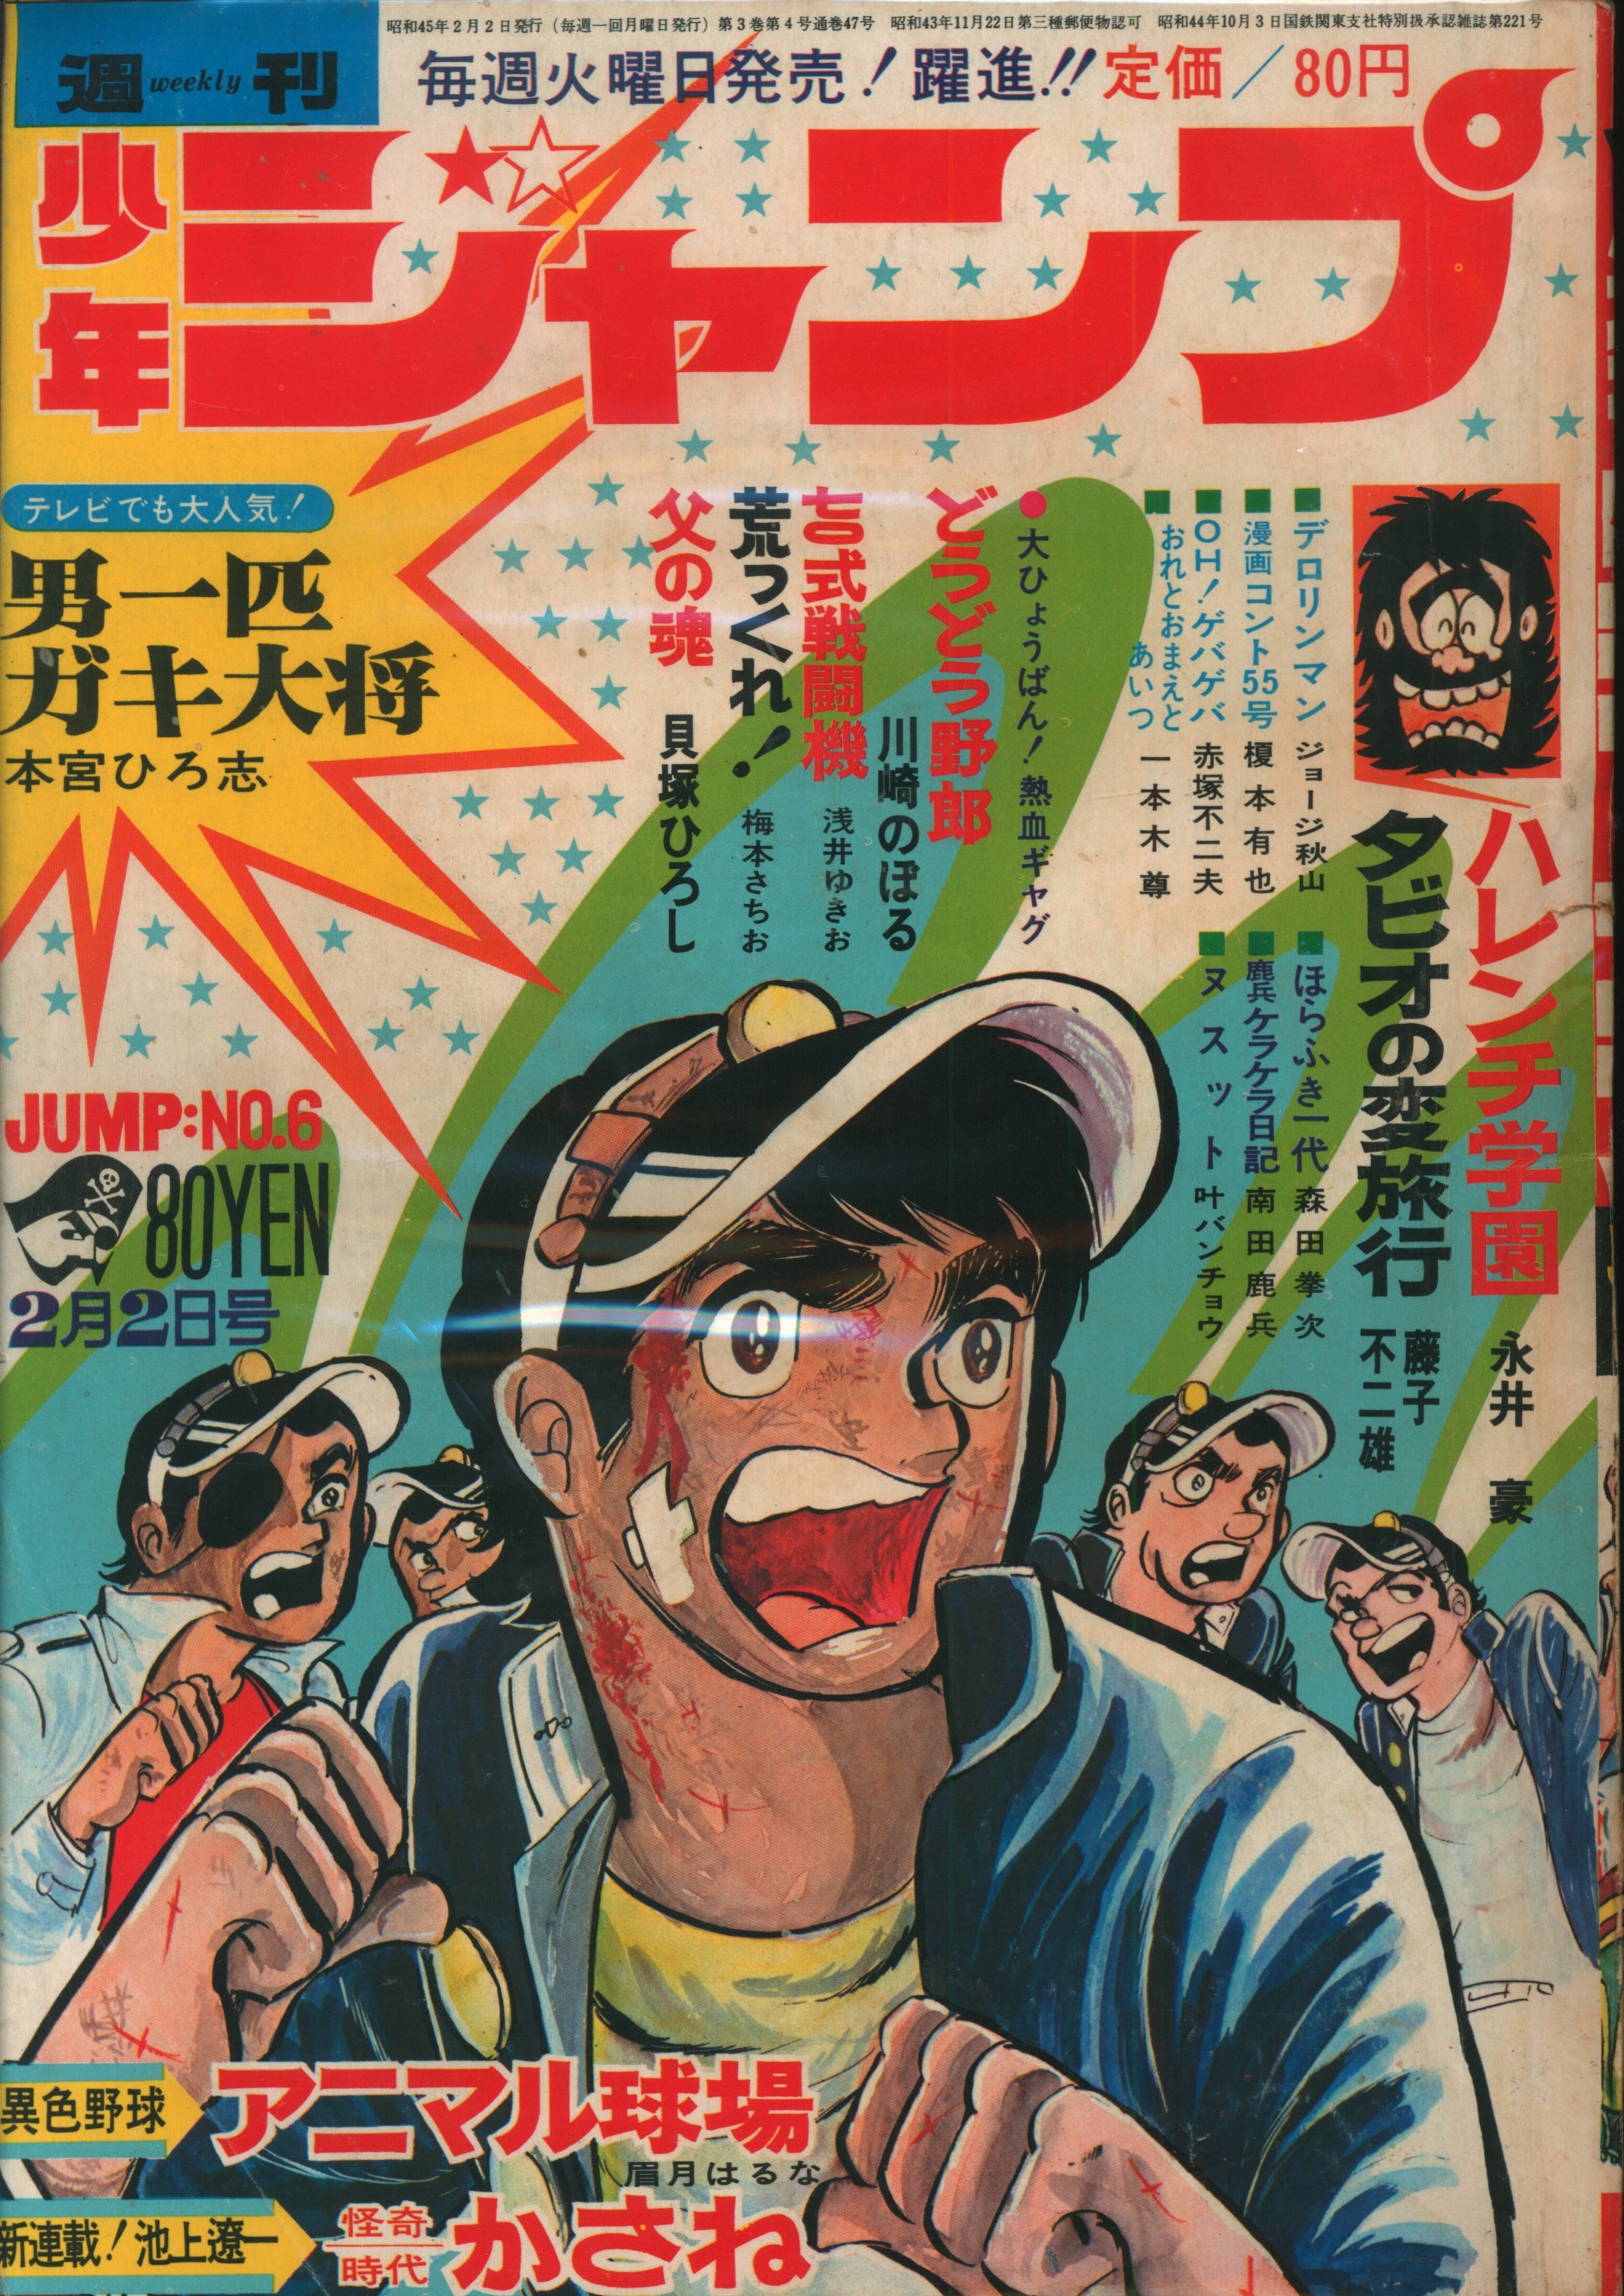 集英社 1970年(昭和45年)の漫画雑誌 週刊少年ジャンプ 1970年(昭和45年)06 7006 | まんだらけ Mandarake